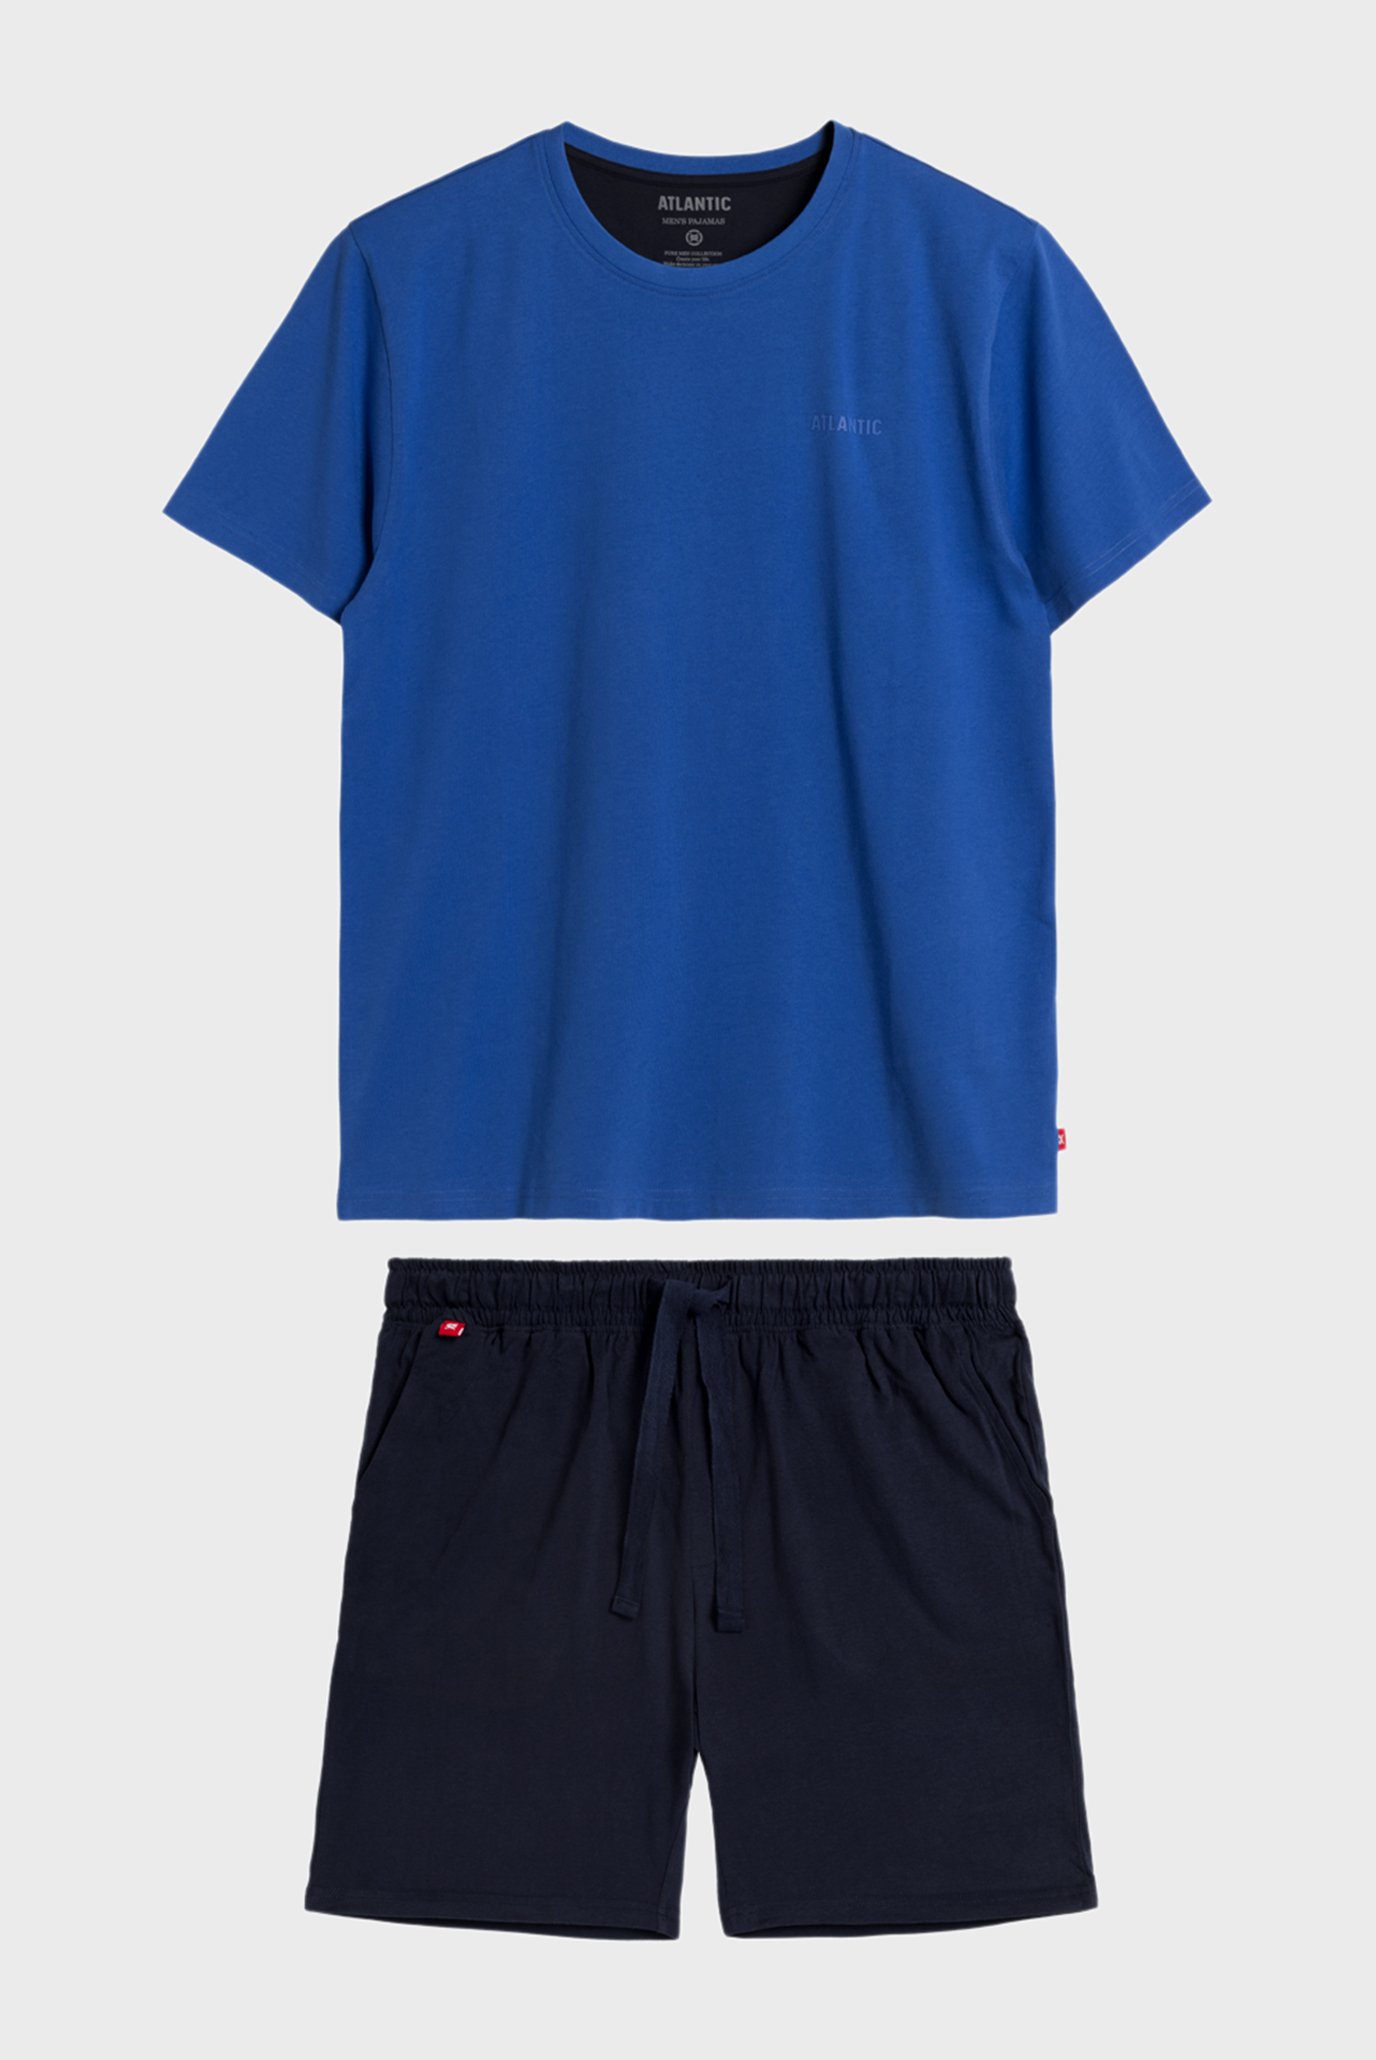 Чоловіча синя піжама (футболка, шорти) 1